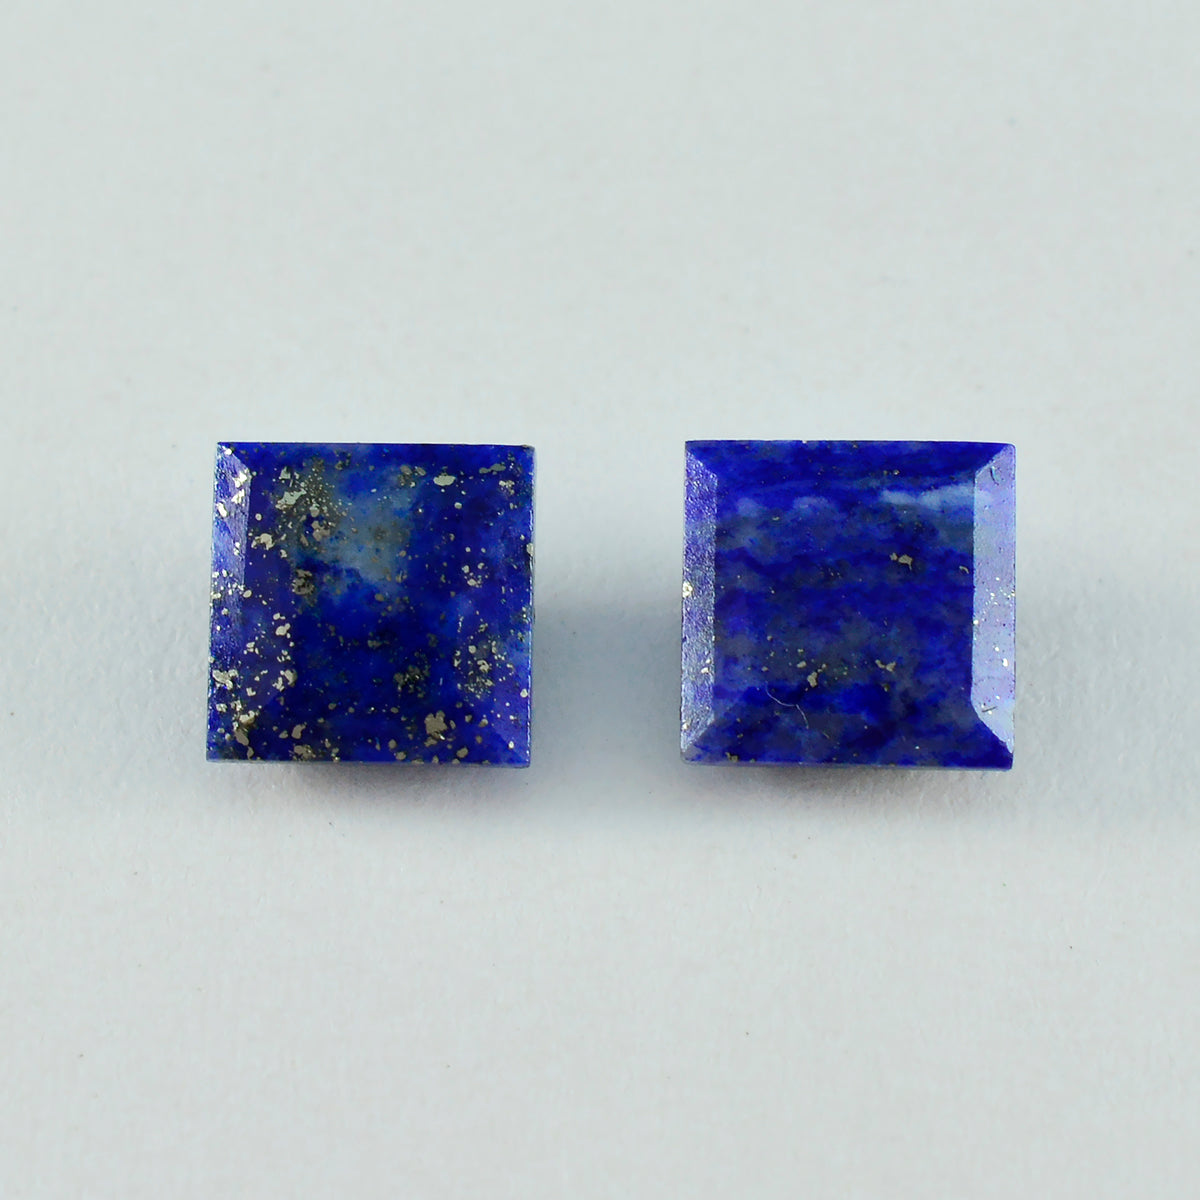 Riyogems 1 Stück natürlicher blauer Lapislazuli, facettiert, 11 x 11 mm, quadratische Form, hübsche, hochwertige lose Edelsteine